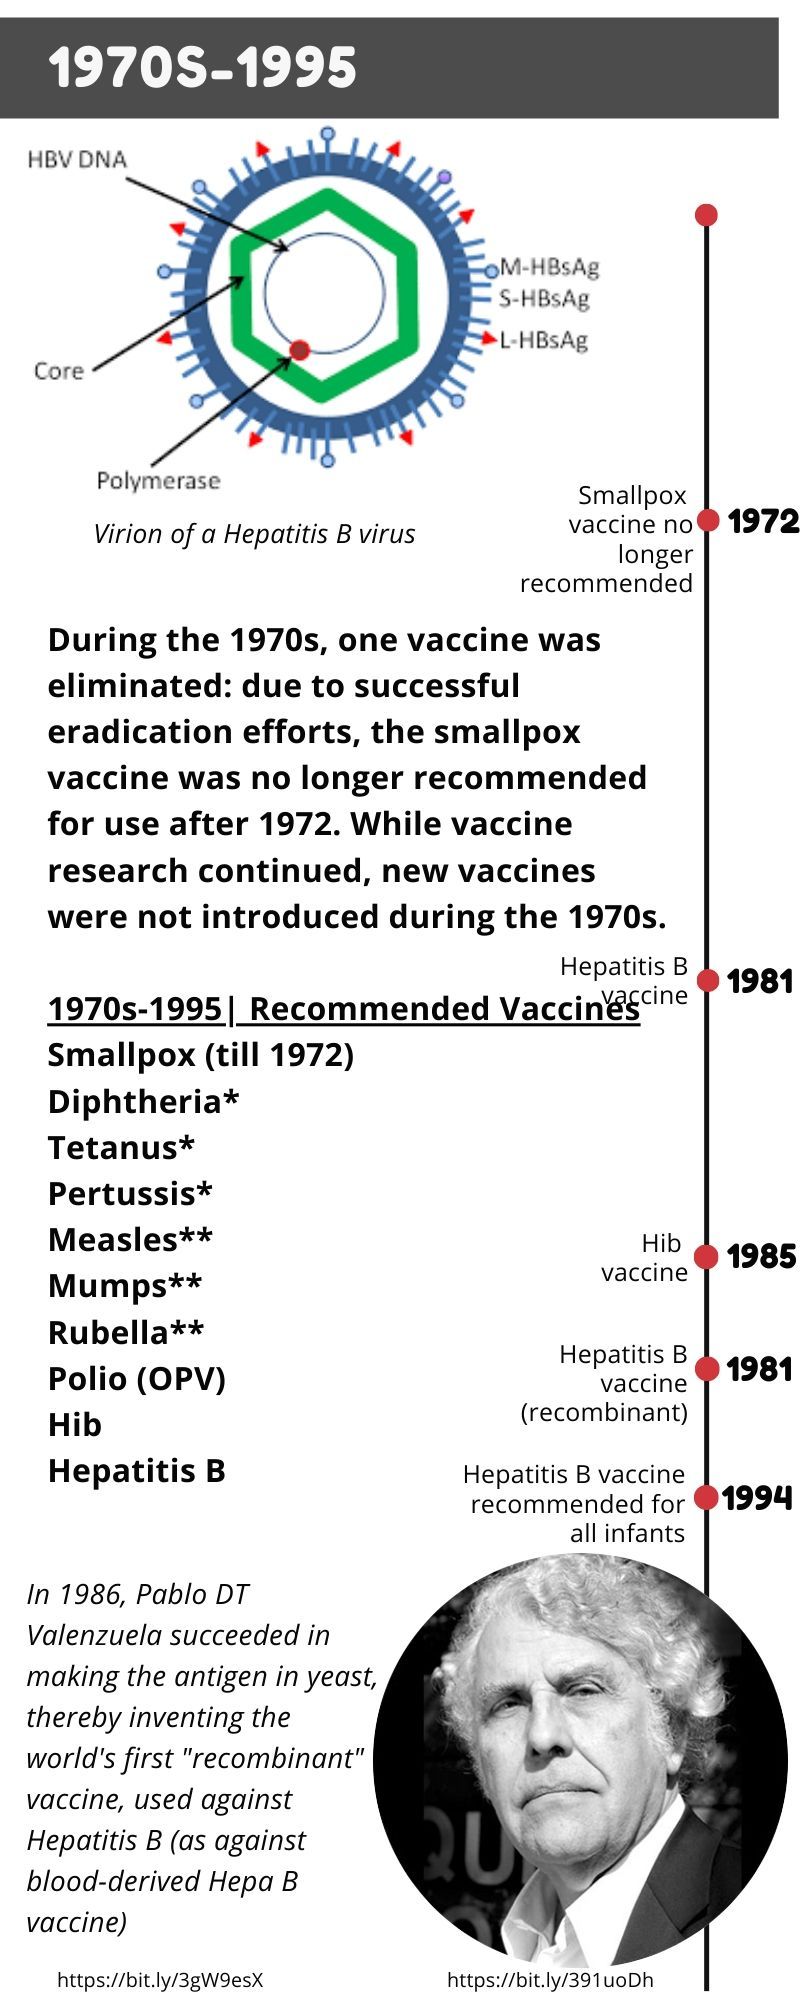 Hepatitis B vaccine 